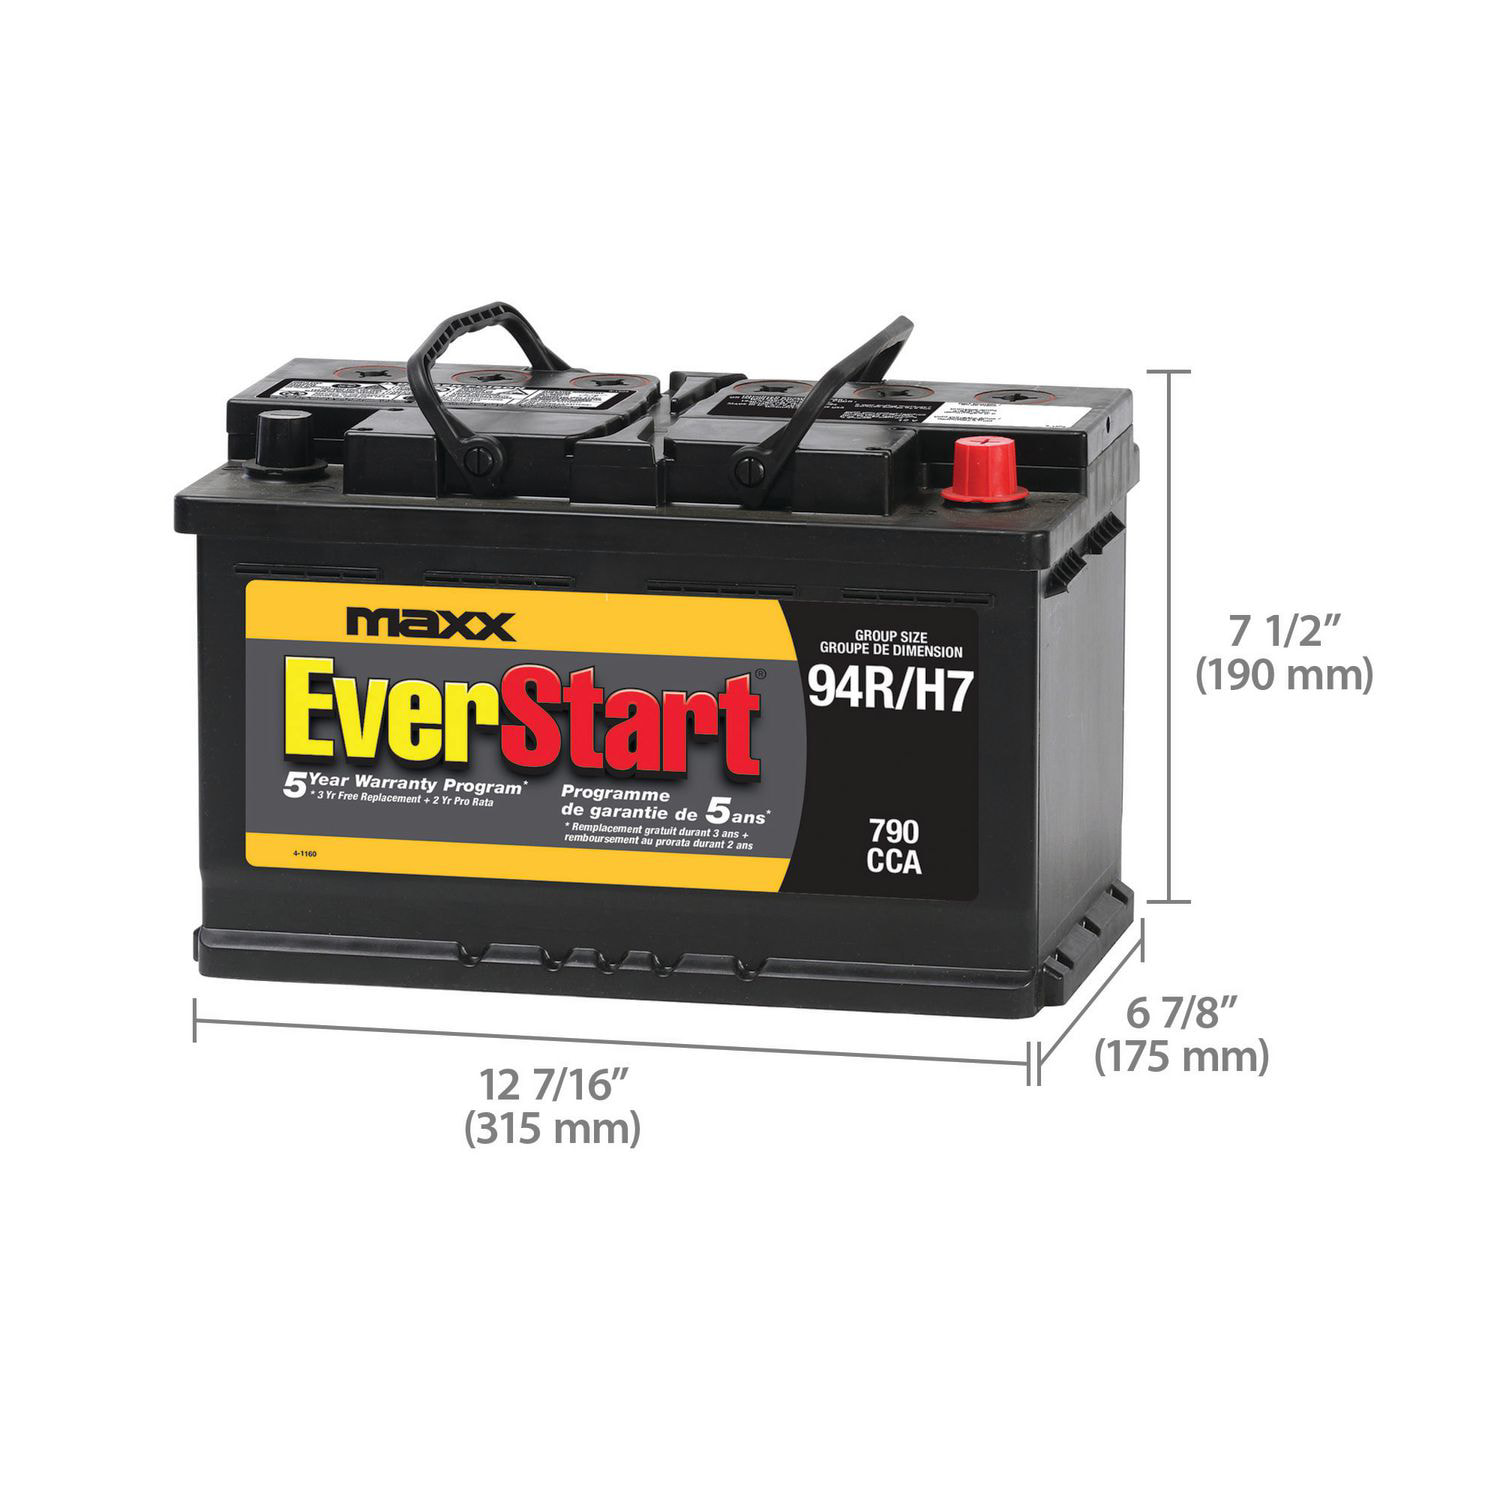 EverStart AUTO MAXX-94R, 12 Volt, Car Battery, Group Size 94R, 790